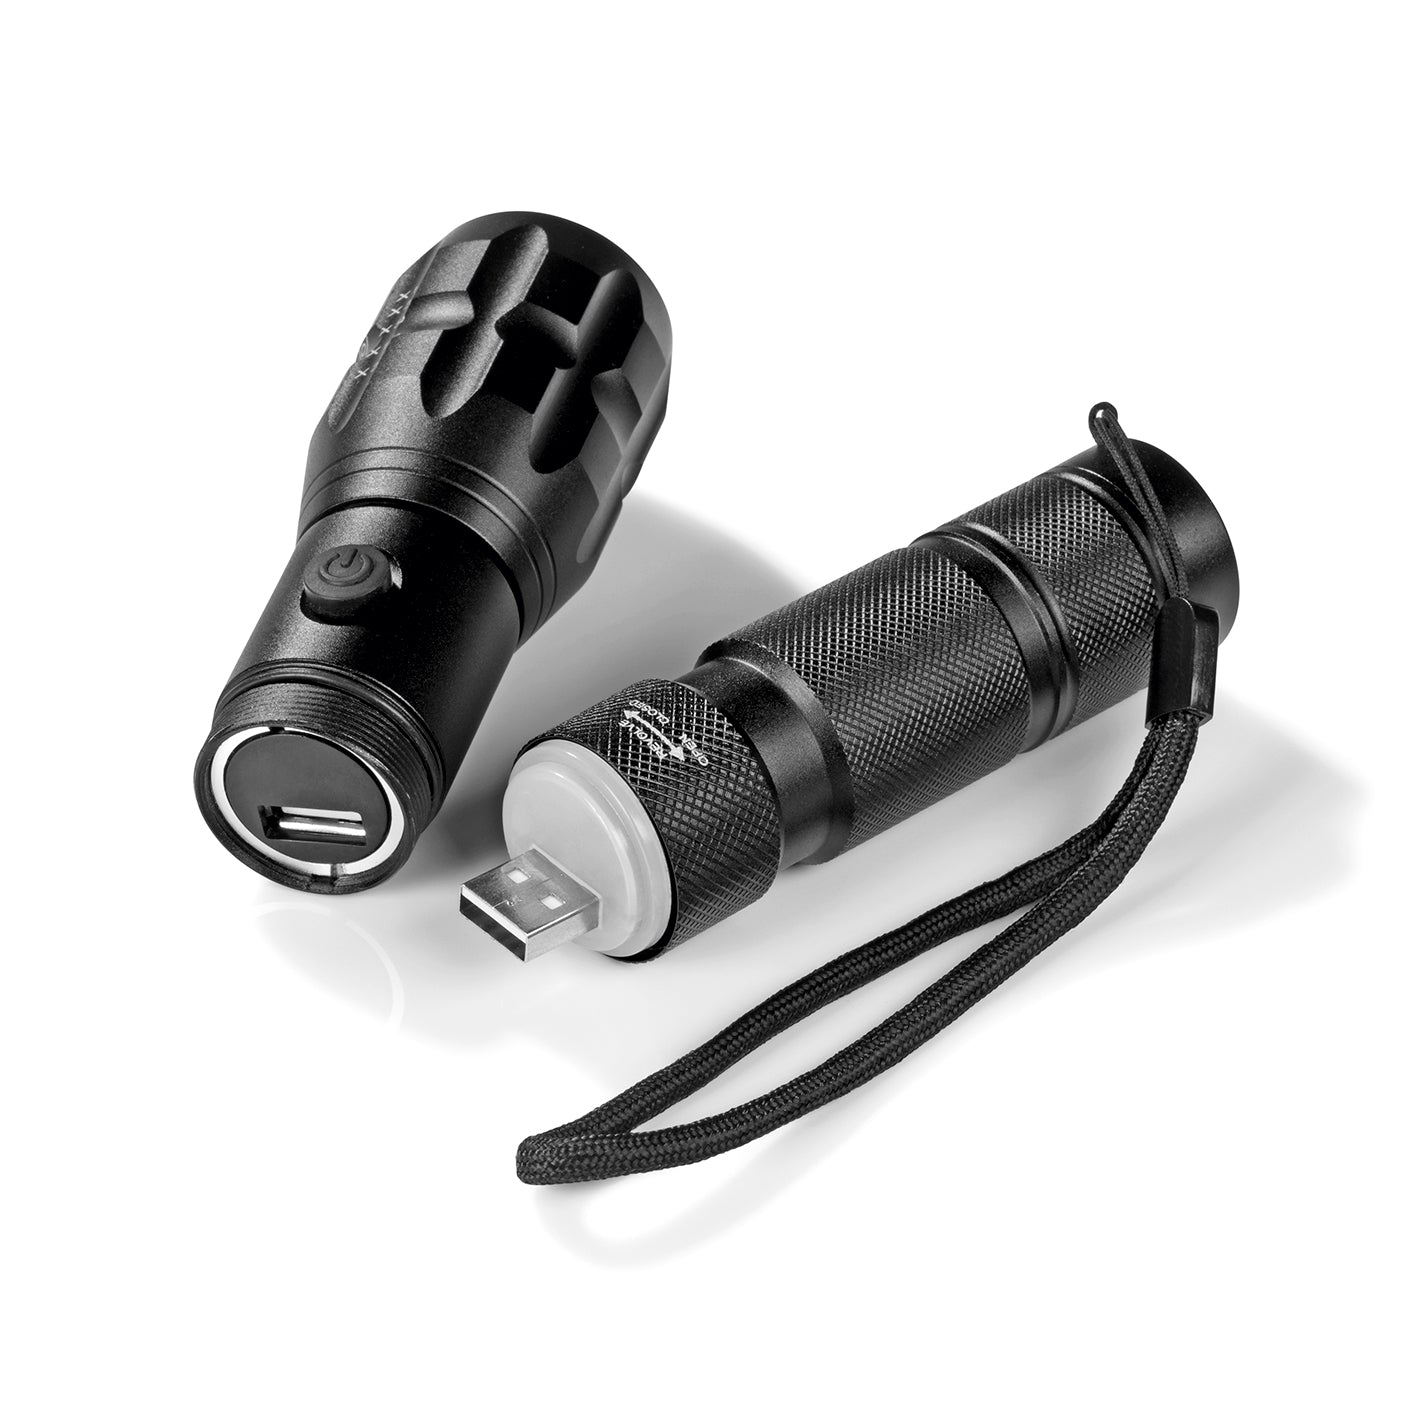 Power-Taschenlampe 3,7 V - 1800 mAh